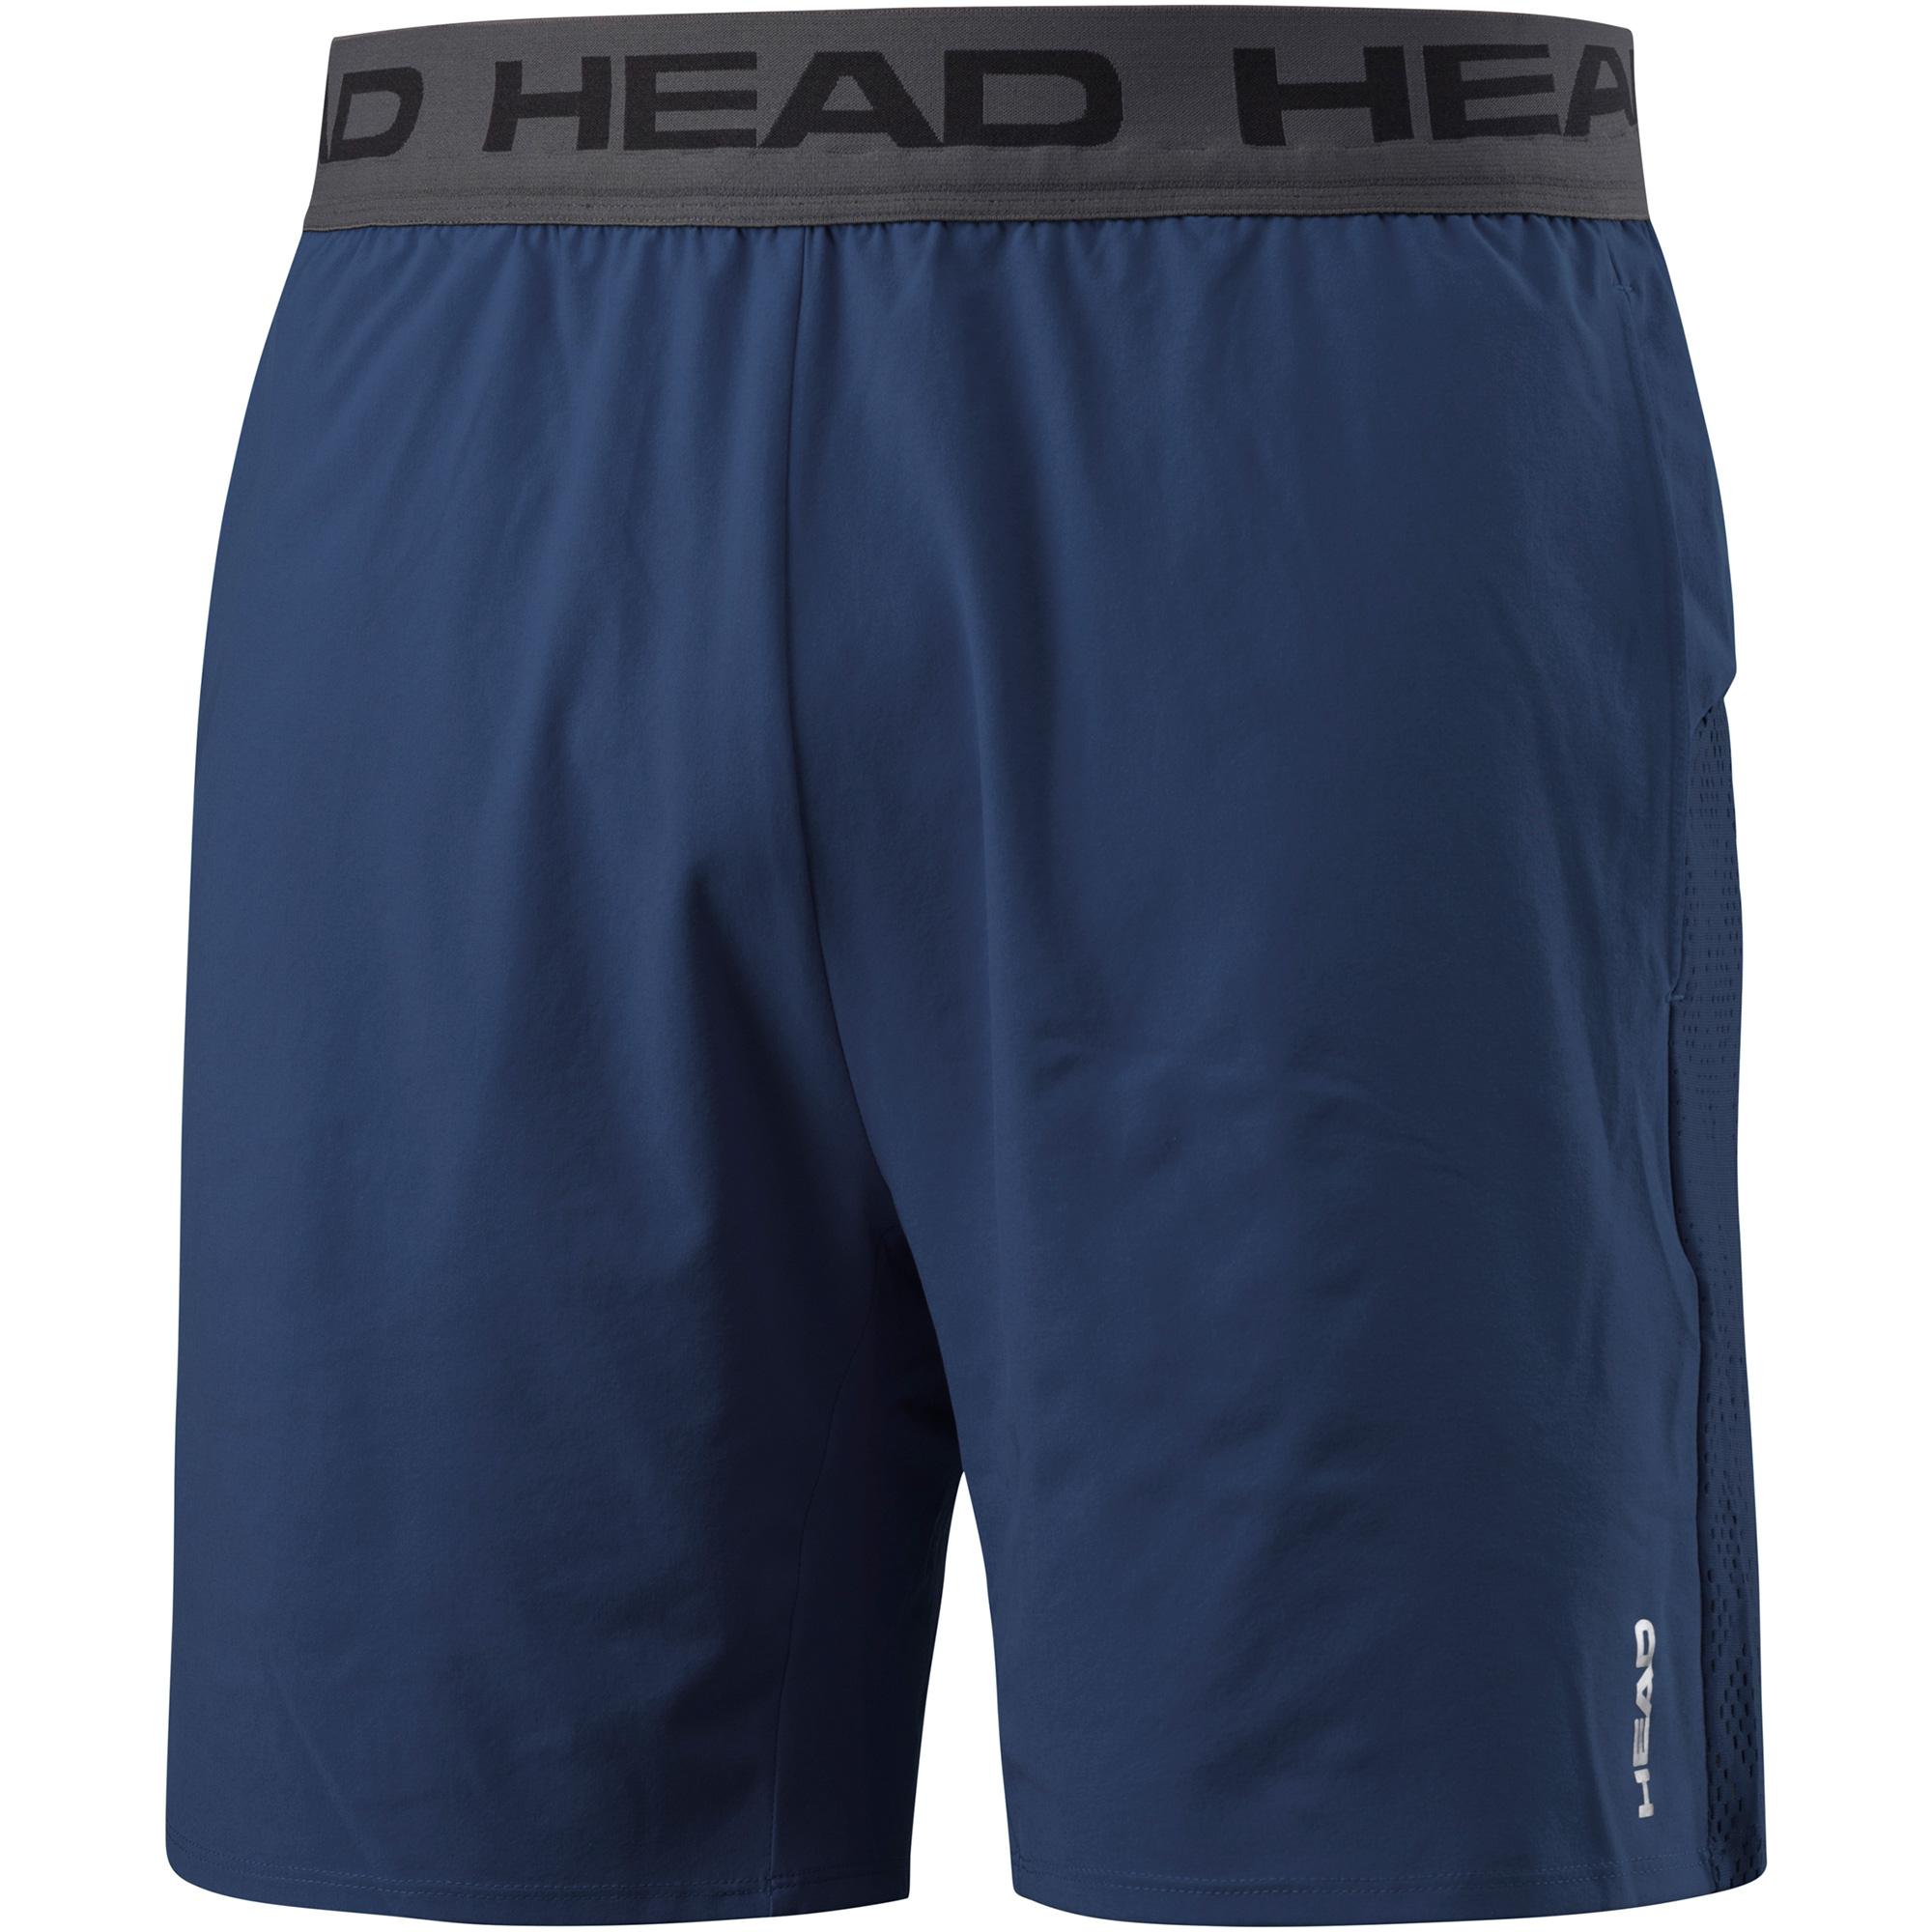 Head Mens Performance Shorts - Navy - Tennisnuts.com